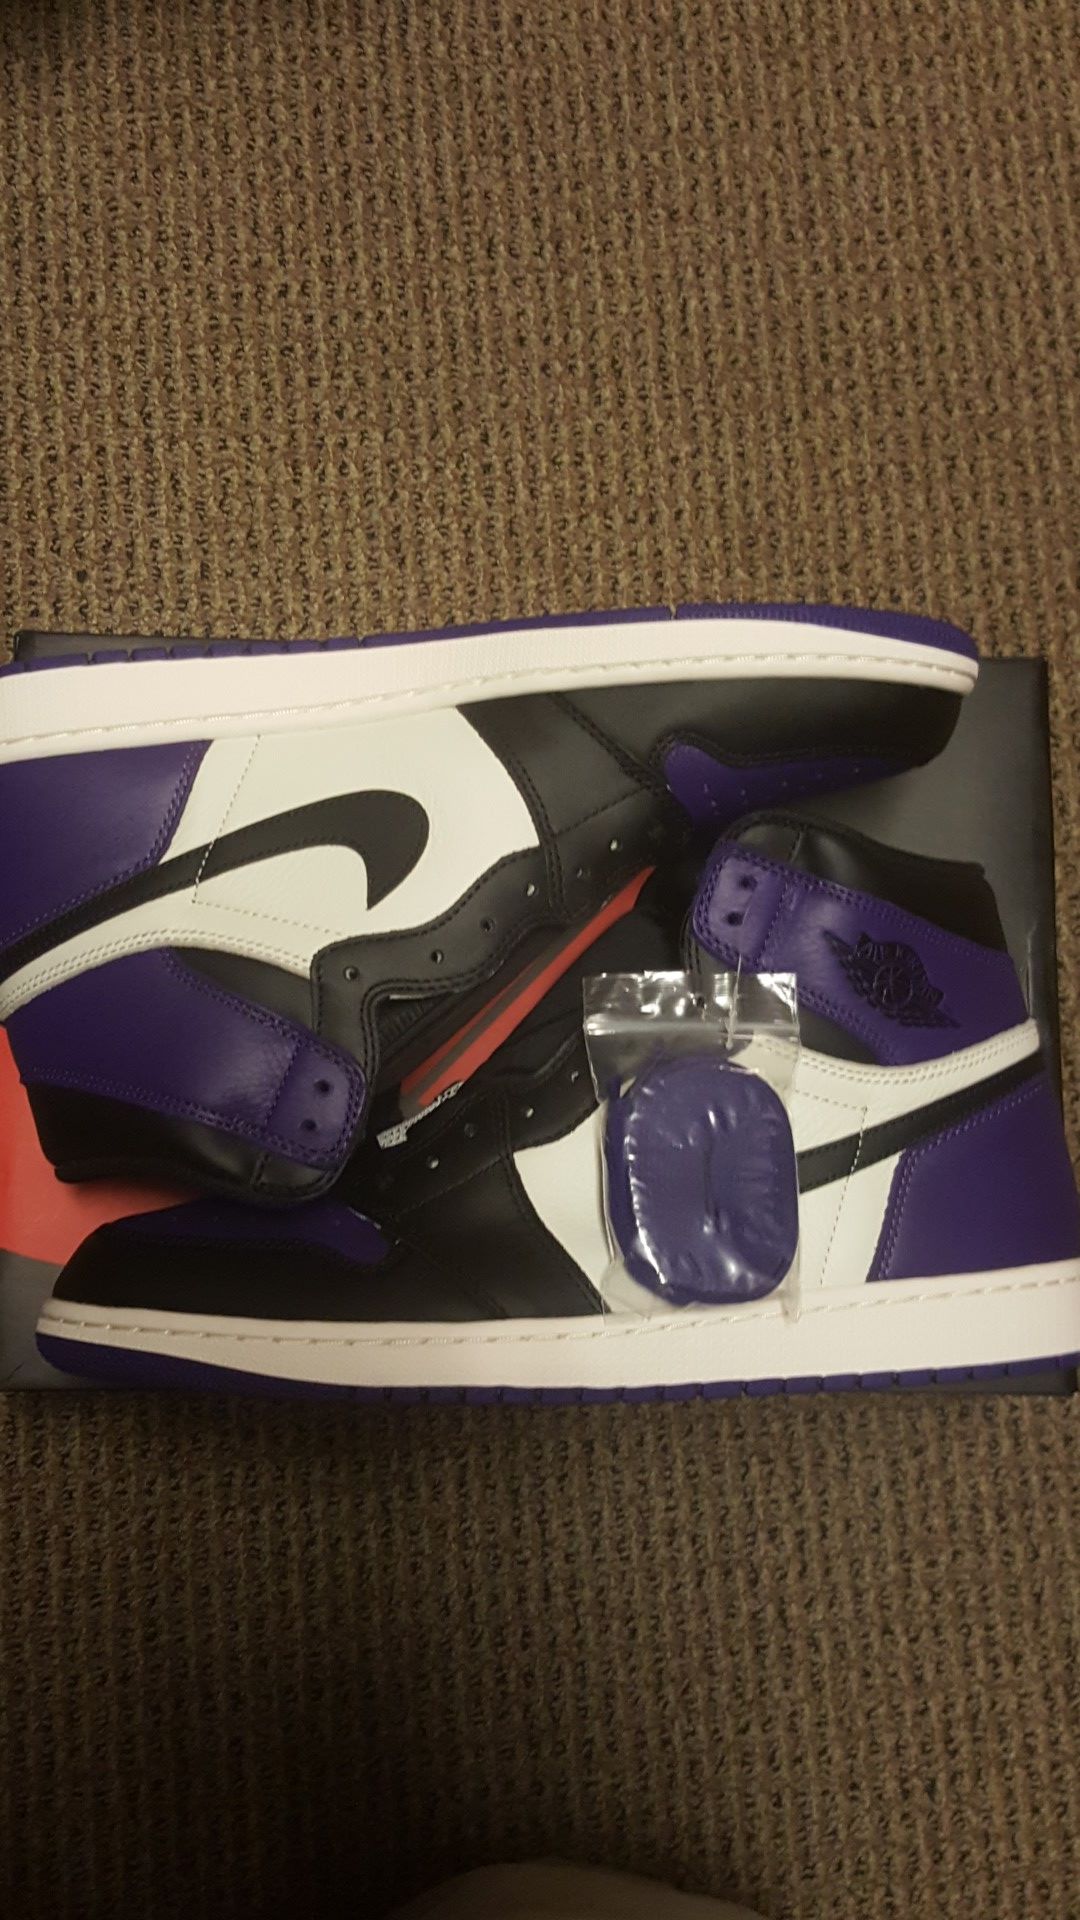 Air Jordan 1 Purple